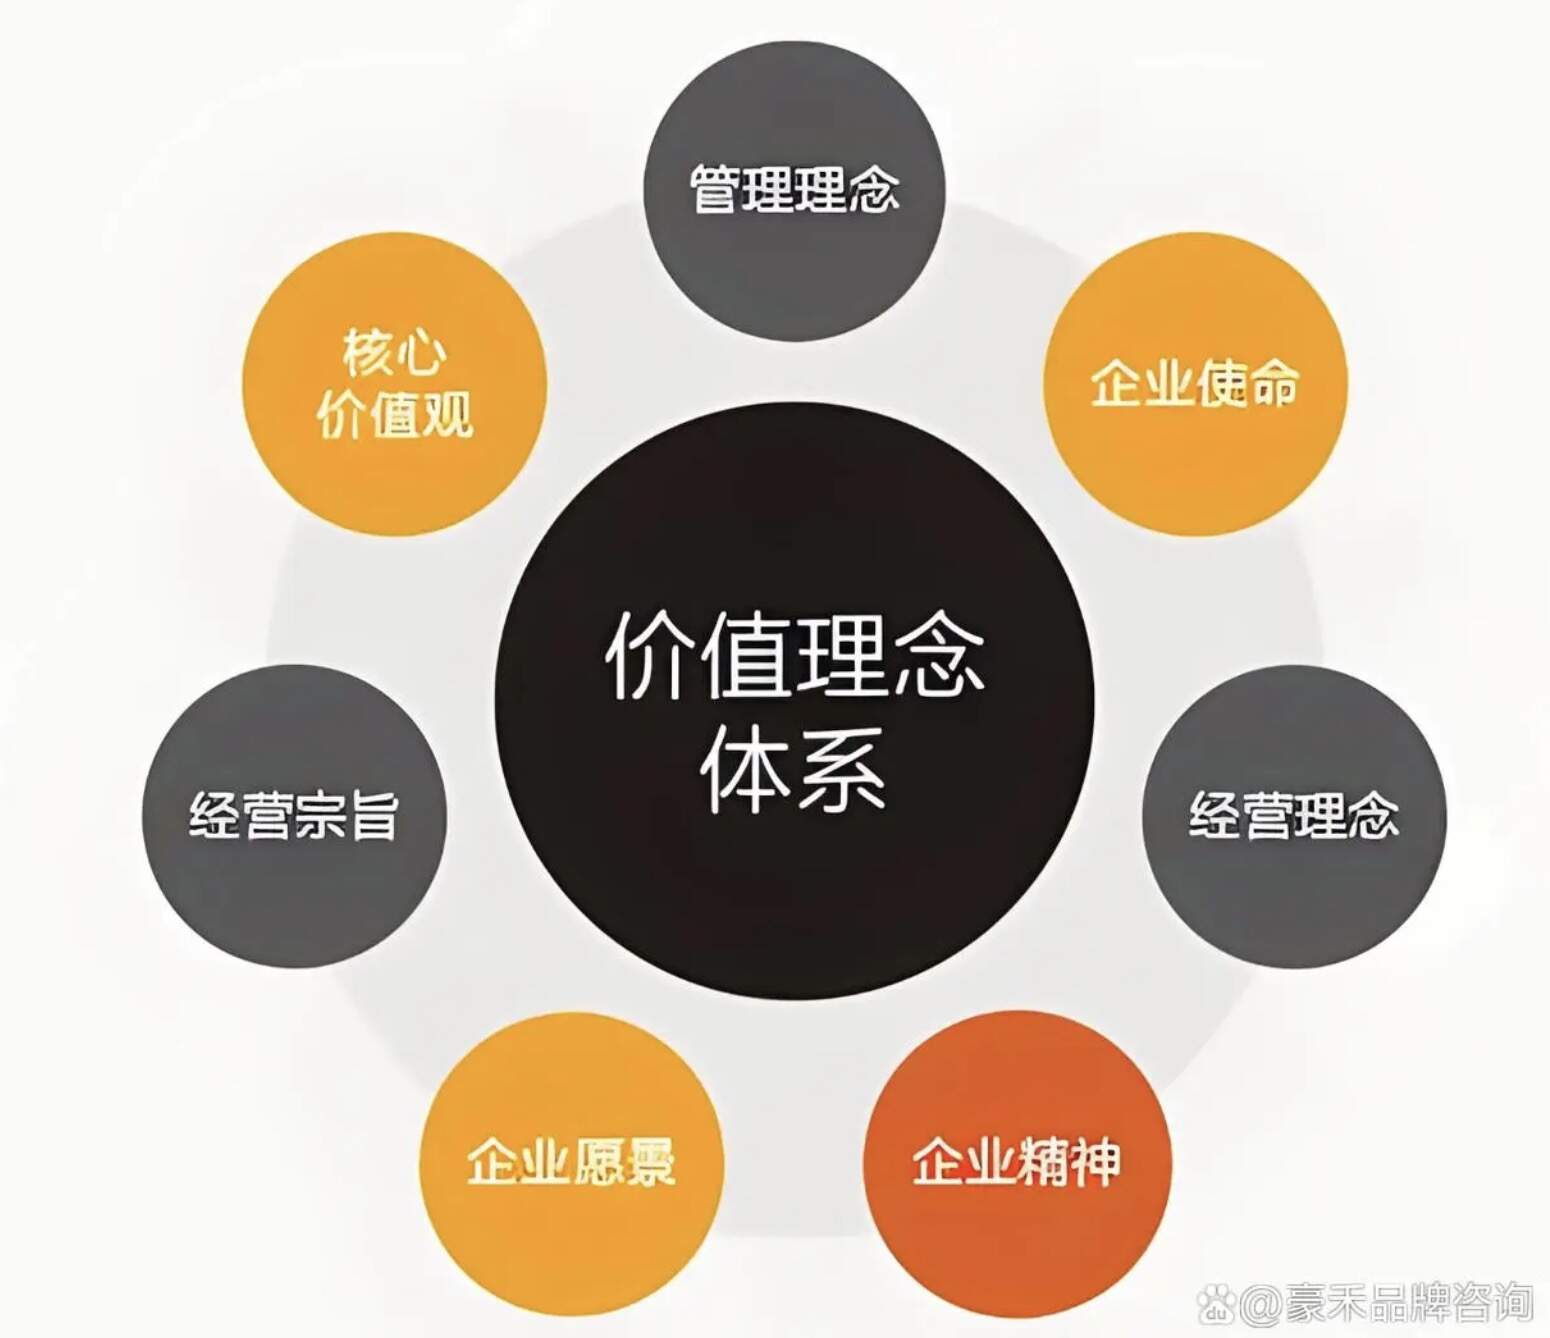 上海豪禾新一代企業文化(4.0社會價值型)的作業流程及內容